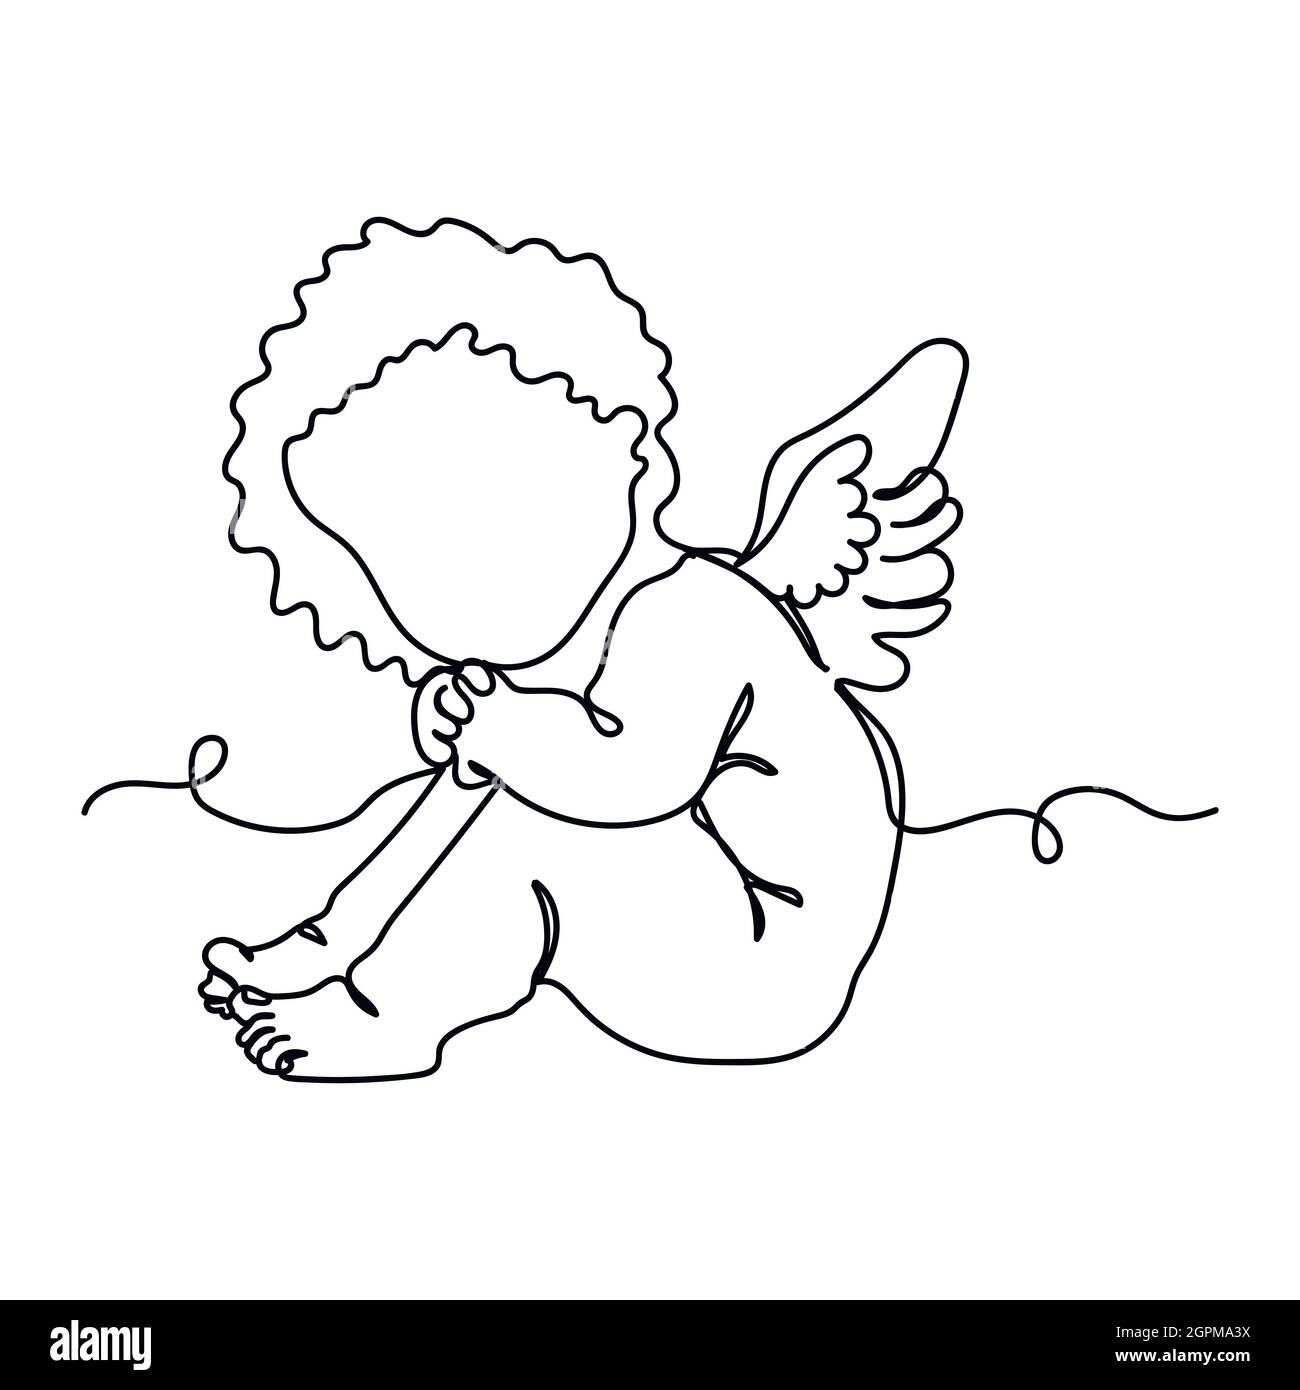 Une ligne continue de l'ange cupid petit bébé en silhouette. Style minimaliste. Idéal pour les cartes, les invitations de fête, les affiches, les autocollants et les vêtements. Icône abstraite noire. Illustration de Vecteur